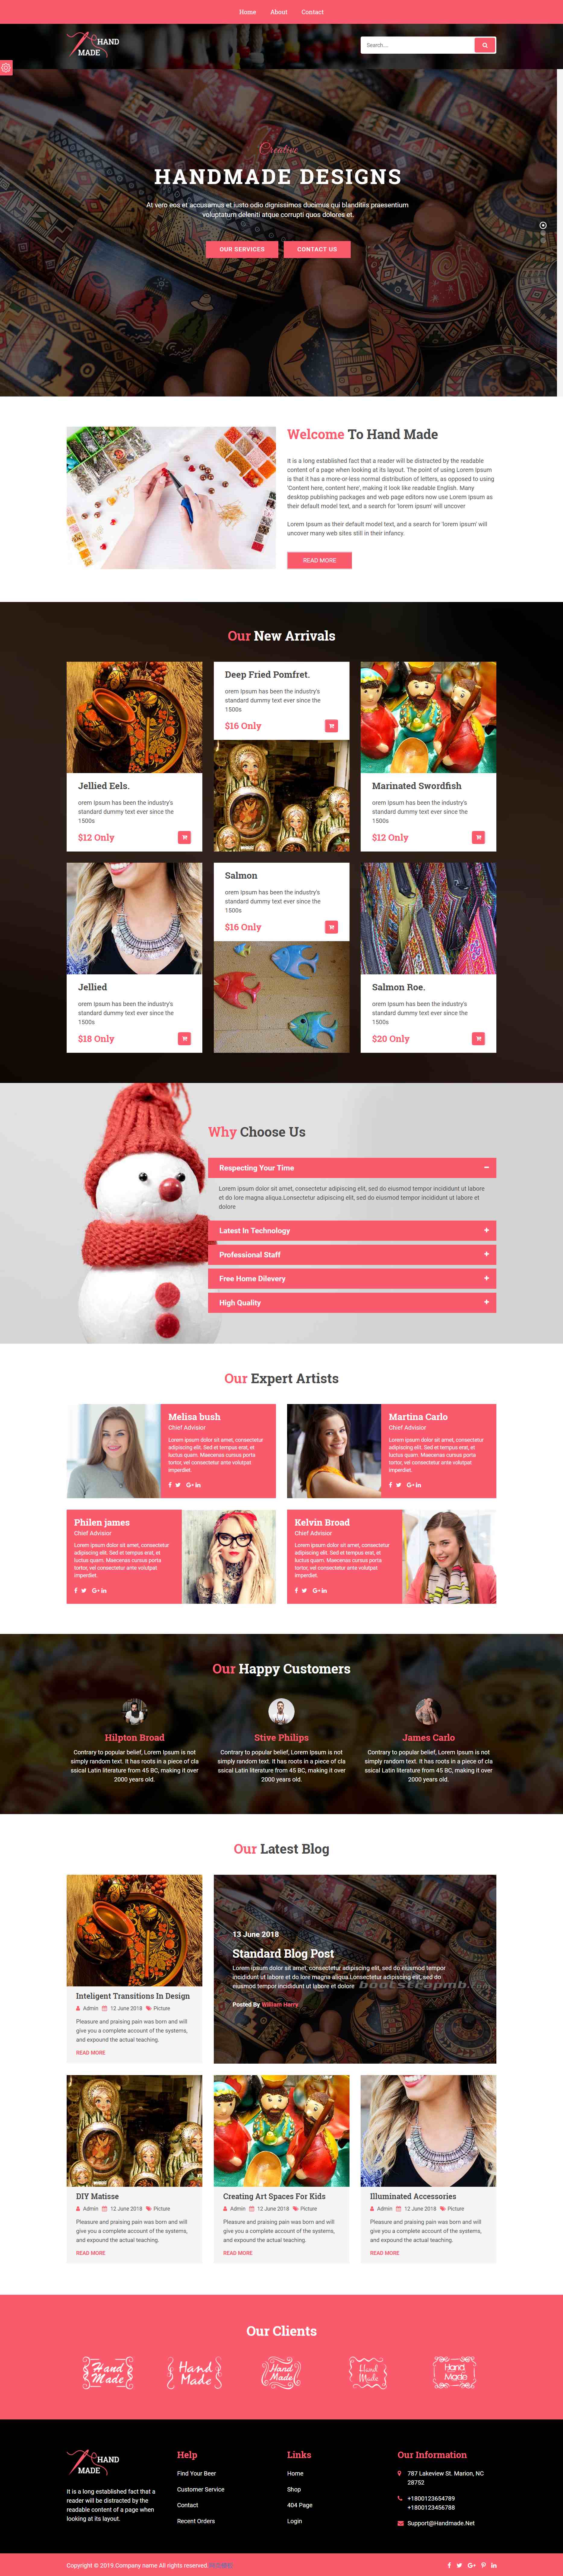 红色简洁样式pc+wap手工艺术商店网页模板代码下载